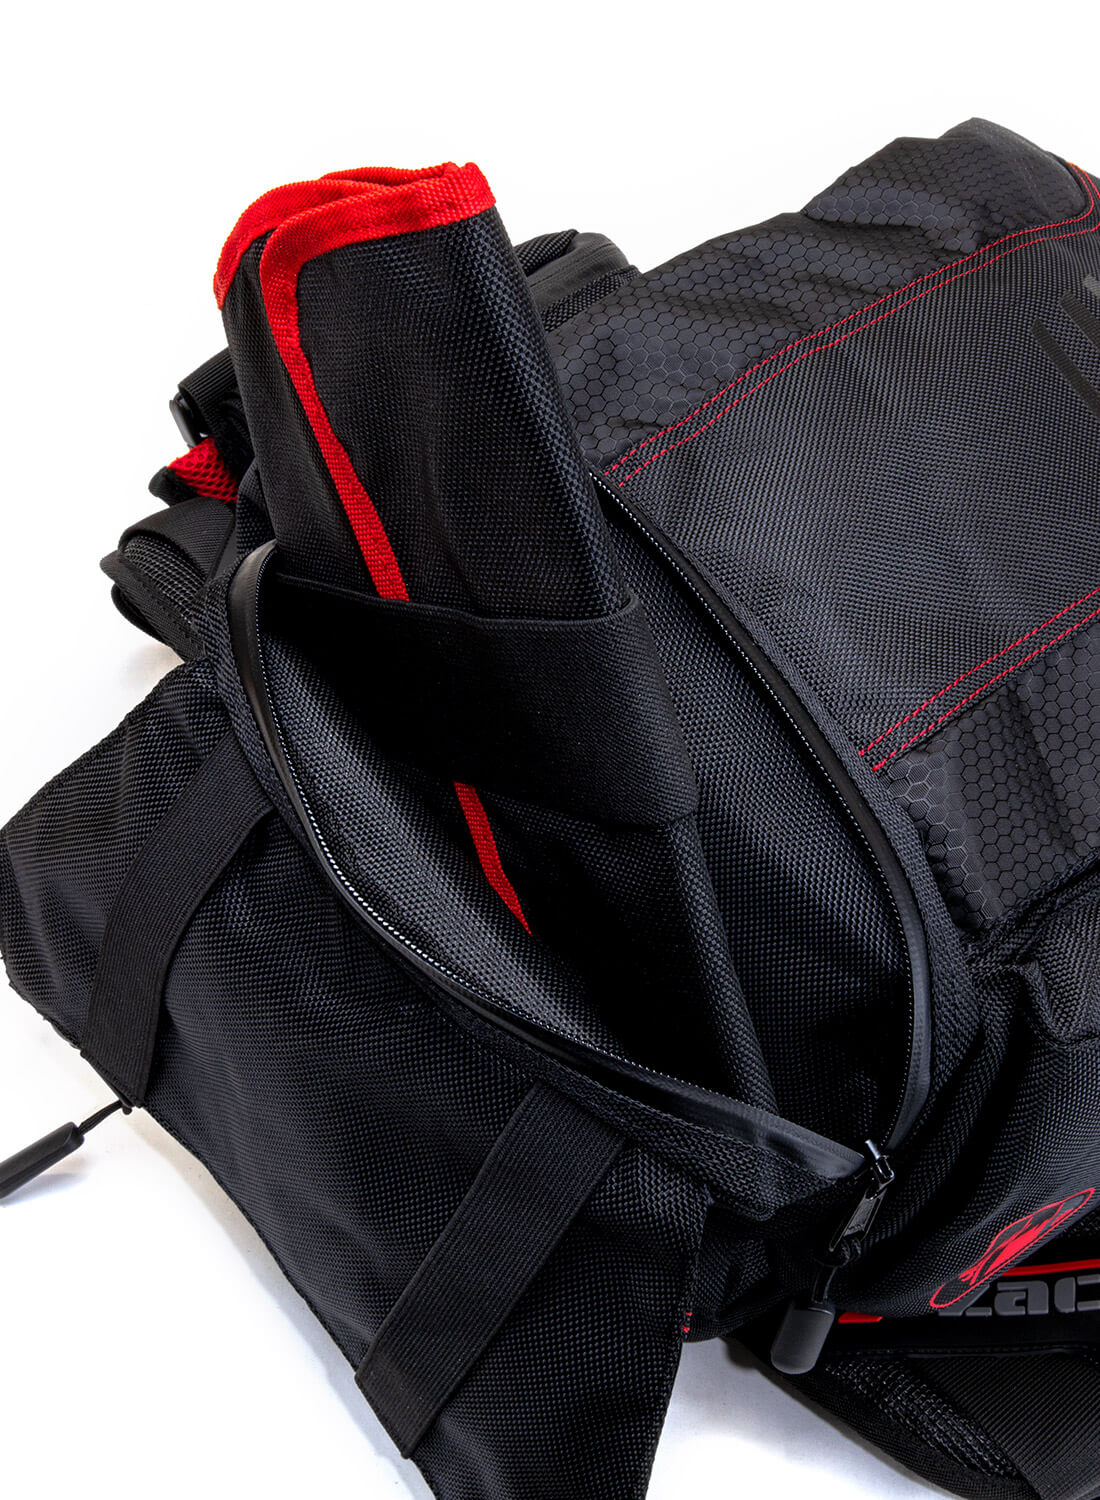 Outdoorweb.eu - Raiden 28, Dakar Black - city backpack - MEATFLY - 74.97 €  - outdoorové oblečení a vybavení shop